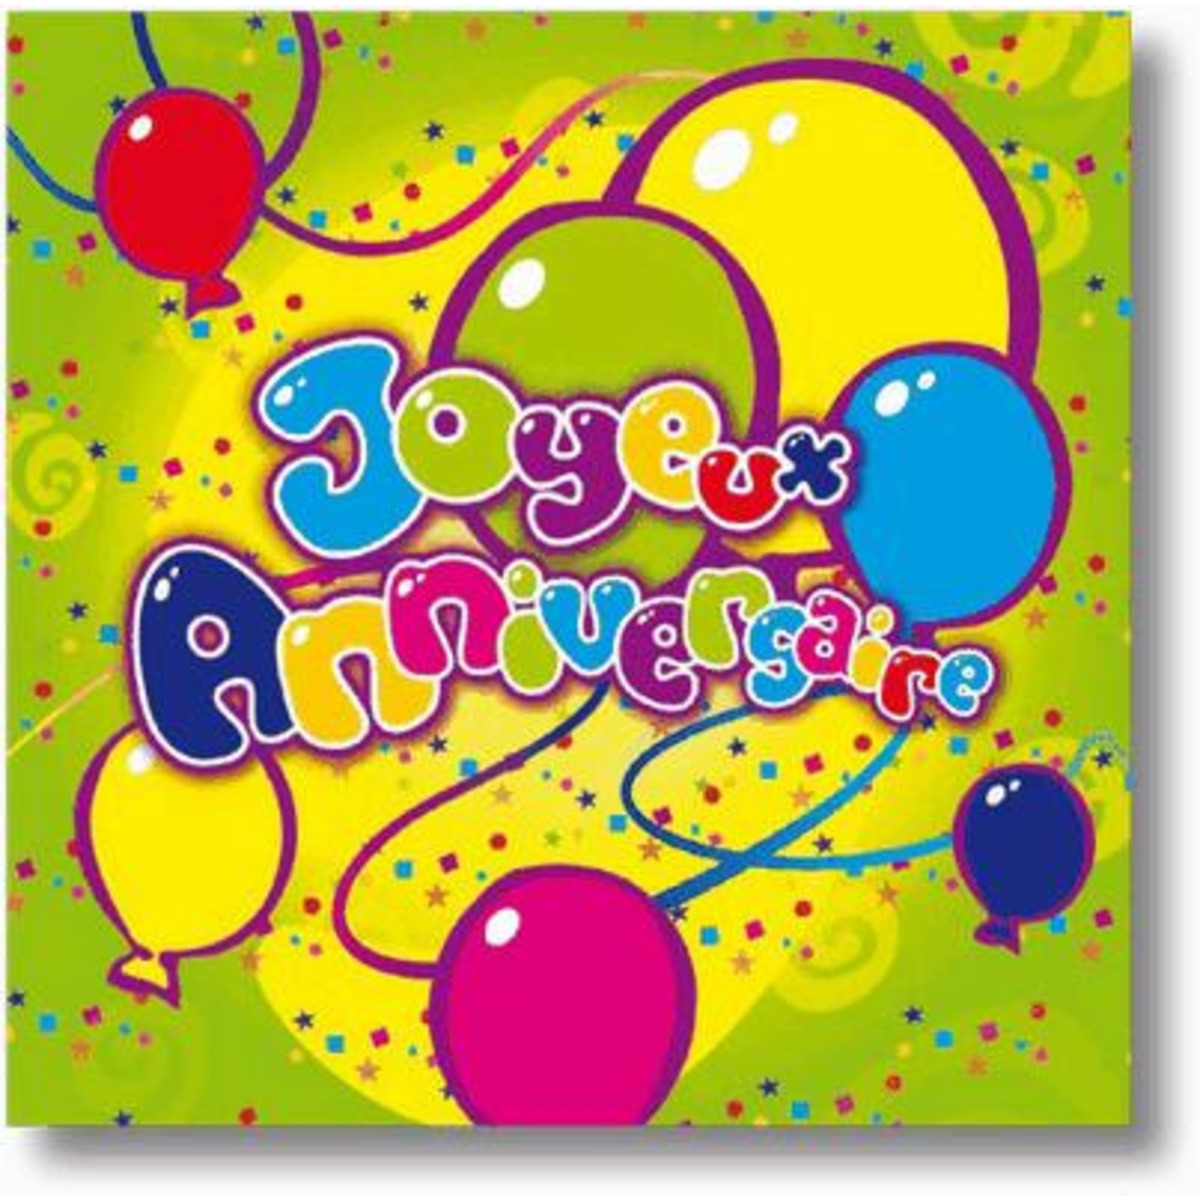 Lot de 20 serviettes Joyeux anniversaire en ouate de cellulose - 33 x 33 cm - Multicolore